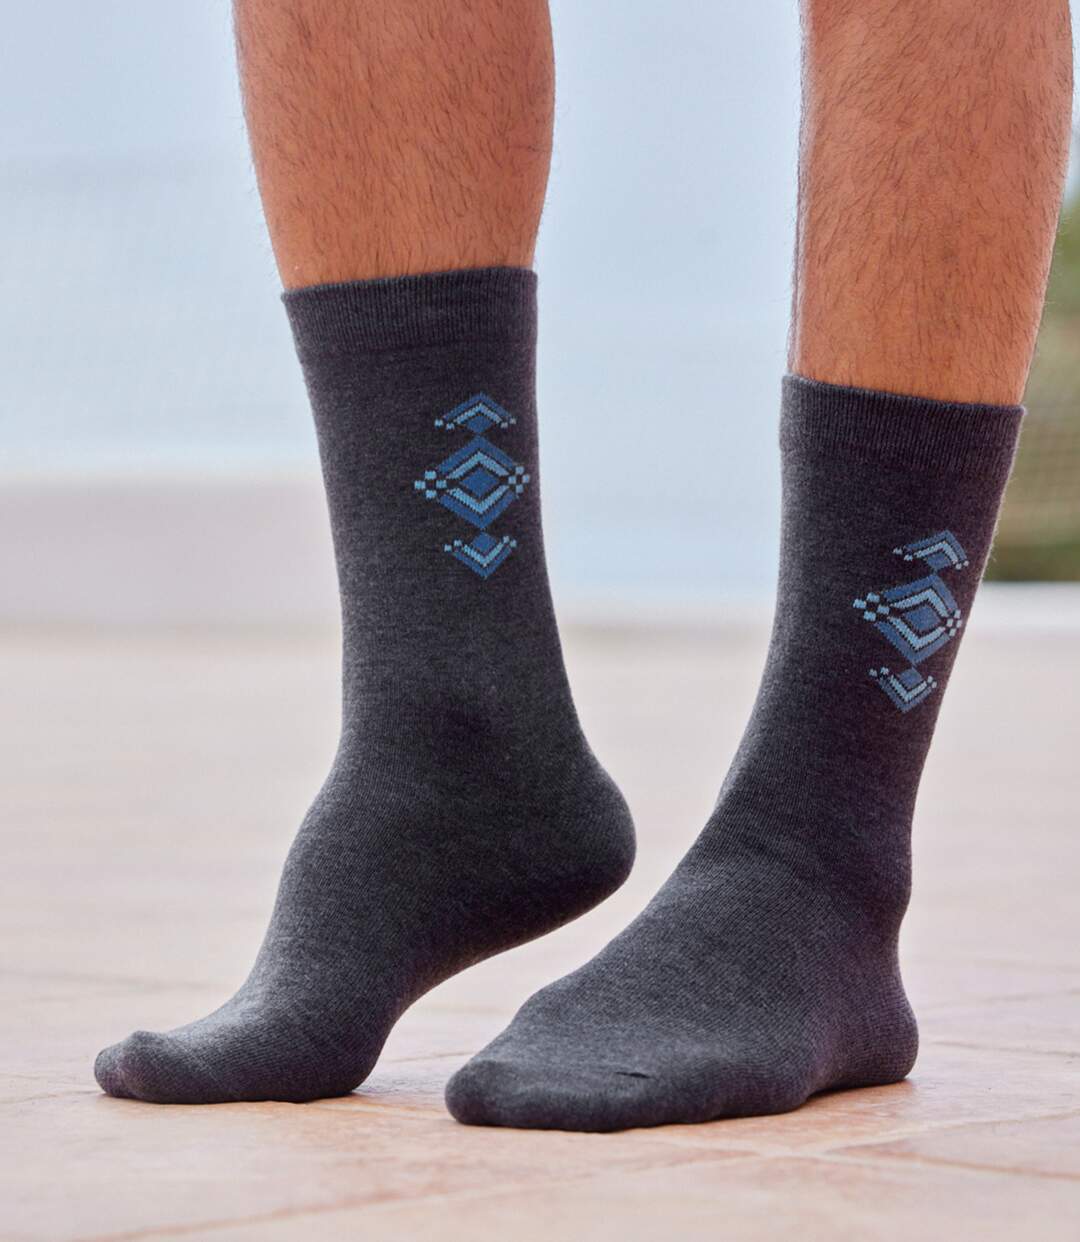 Pack of 5 Pairs of Men's Ankle Socks - Black Blue Anthracite Gray Atlas For Men